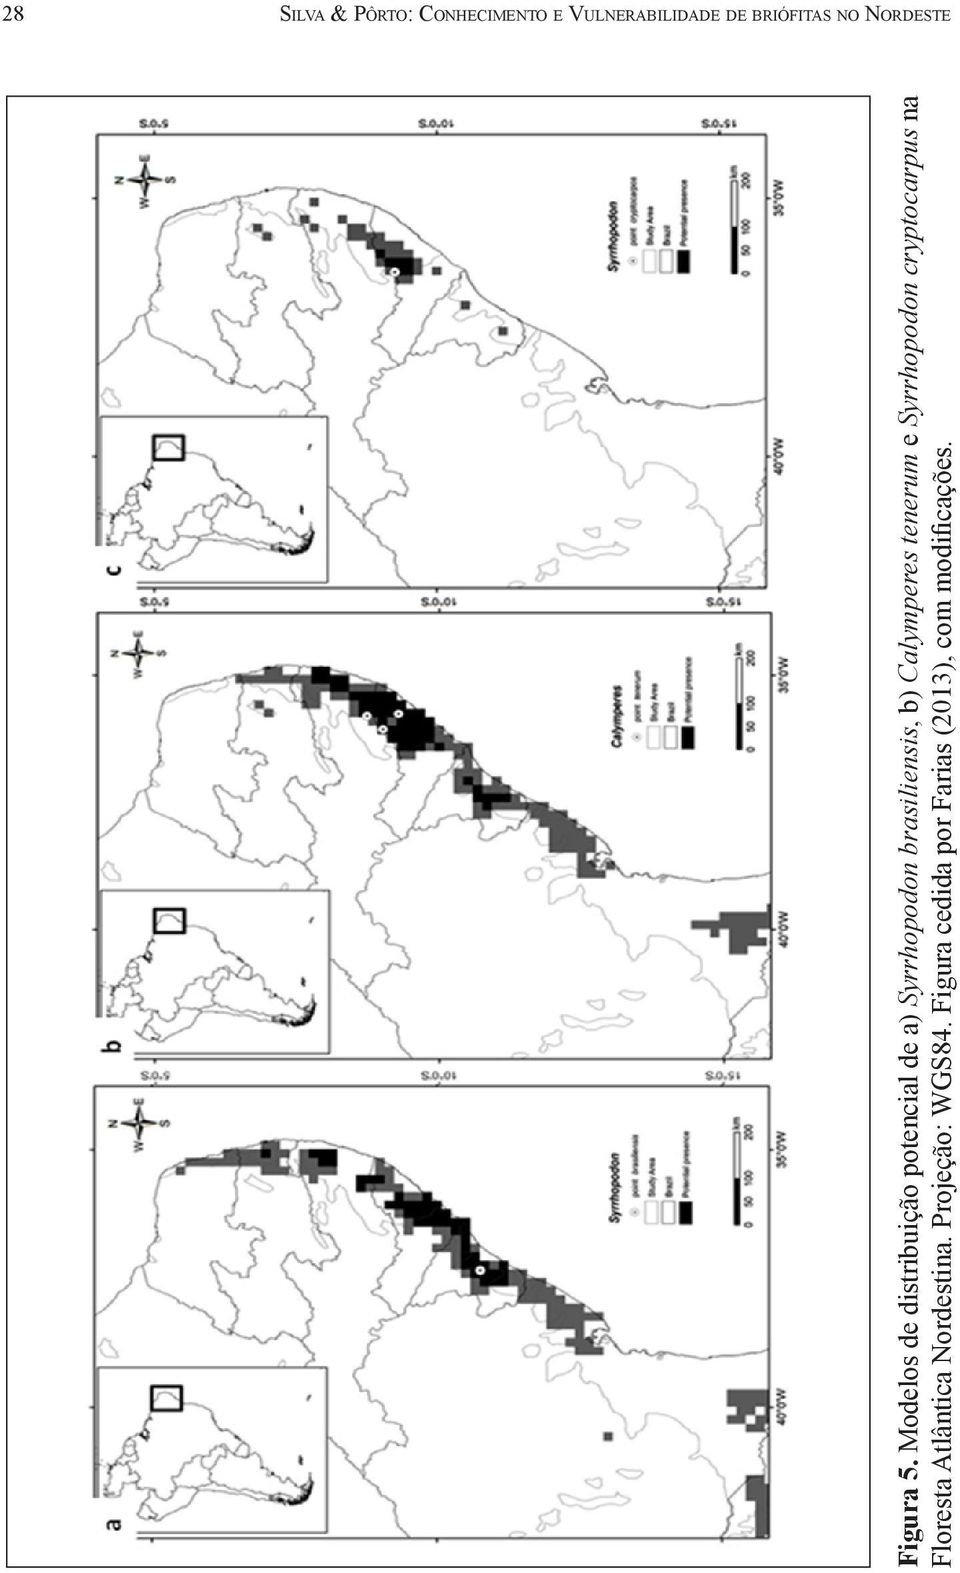 Modelos de distribuição potencial de a) Syrrhopodon brasiliensis, b)